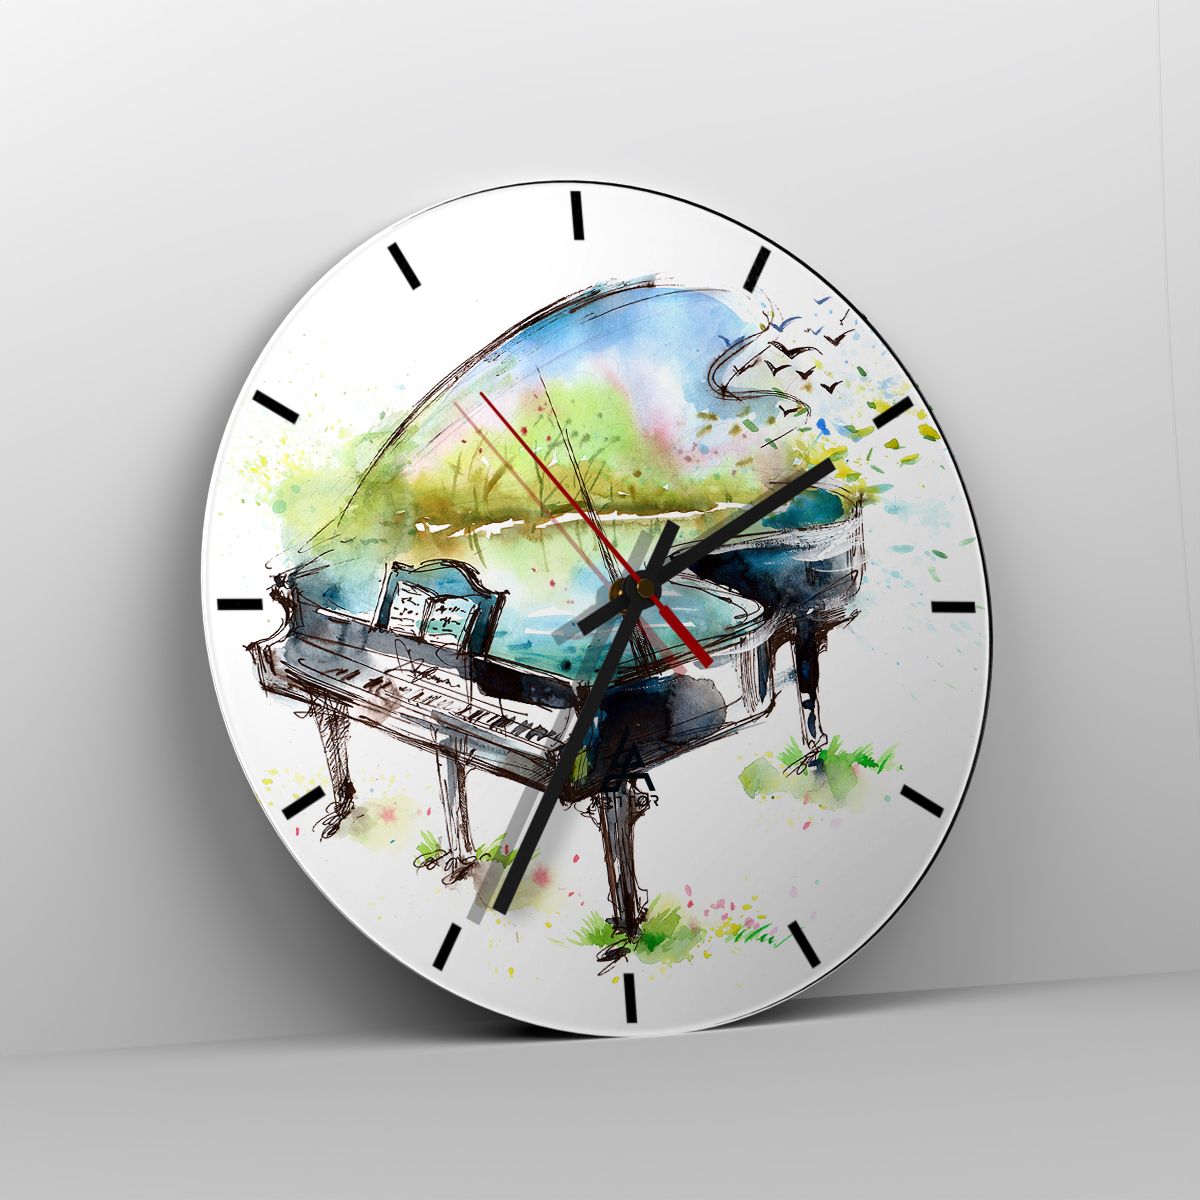 Orologio da parete Arttor - Incantato nella musica - Quadrante con trattini,  Forma: Cerchio - 30x30 cm - Pianoforte, Astrazione, Musica